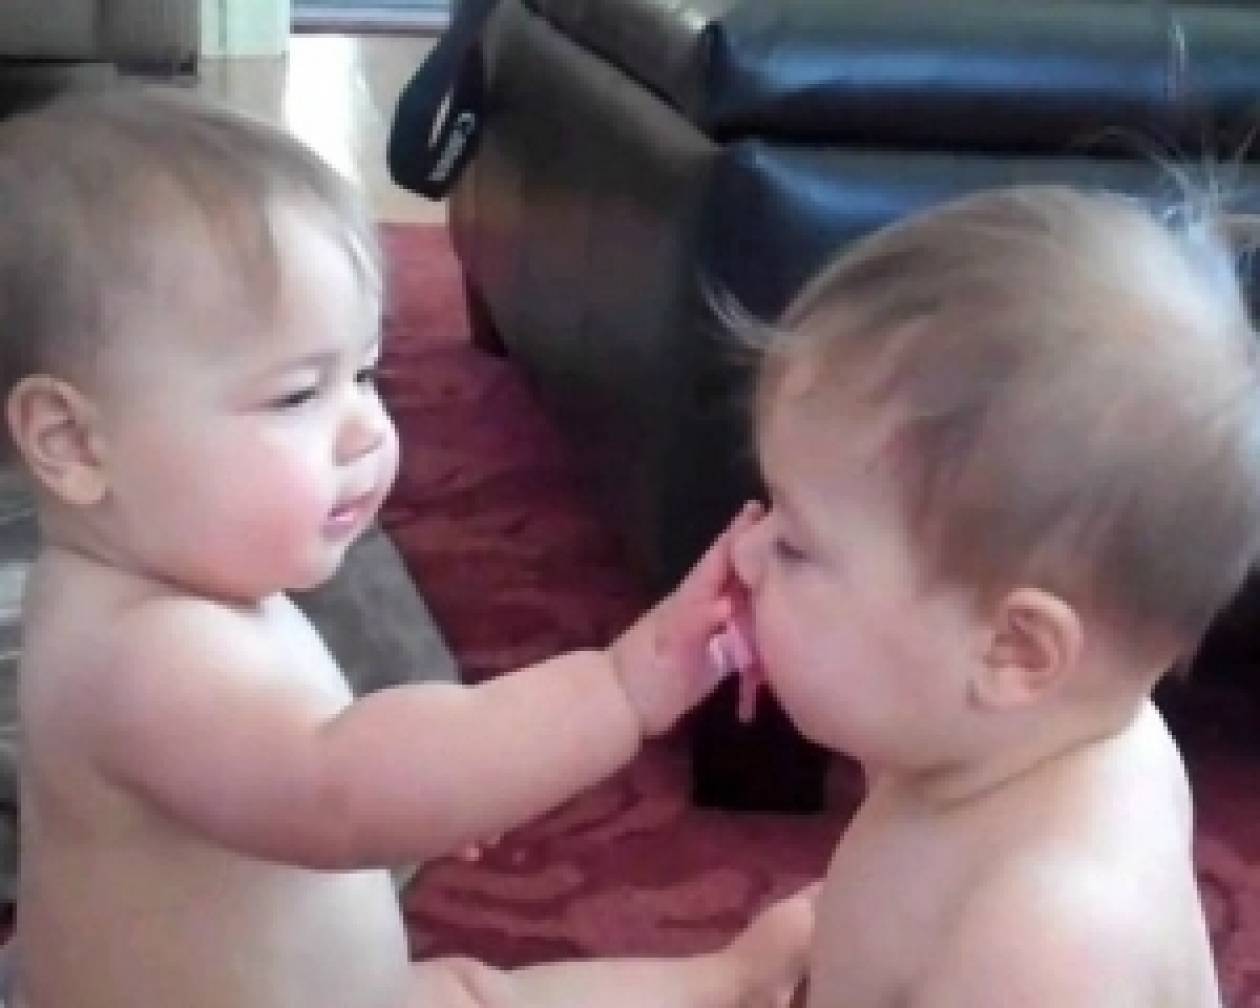 Δείτε: Δύο μωρά μαλώνουν για την πιπίλα (βίντεο)!